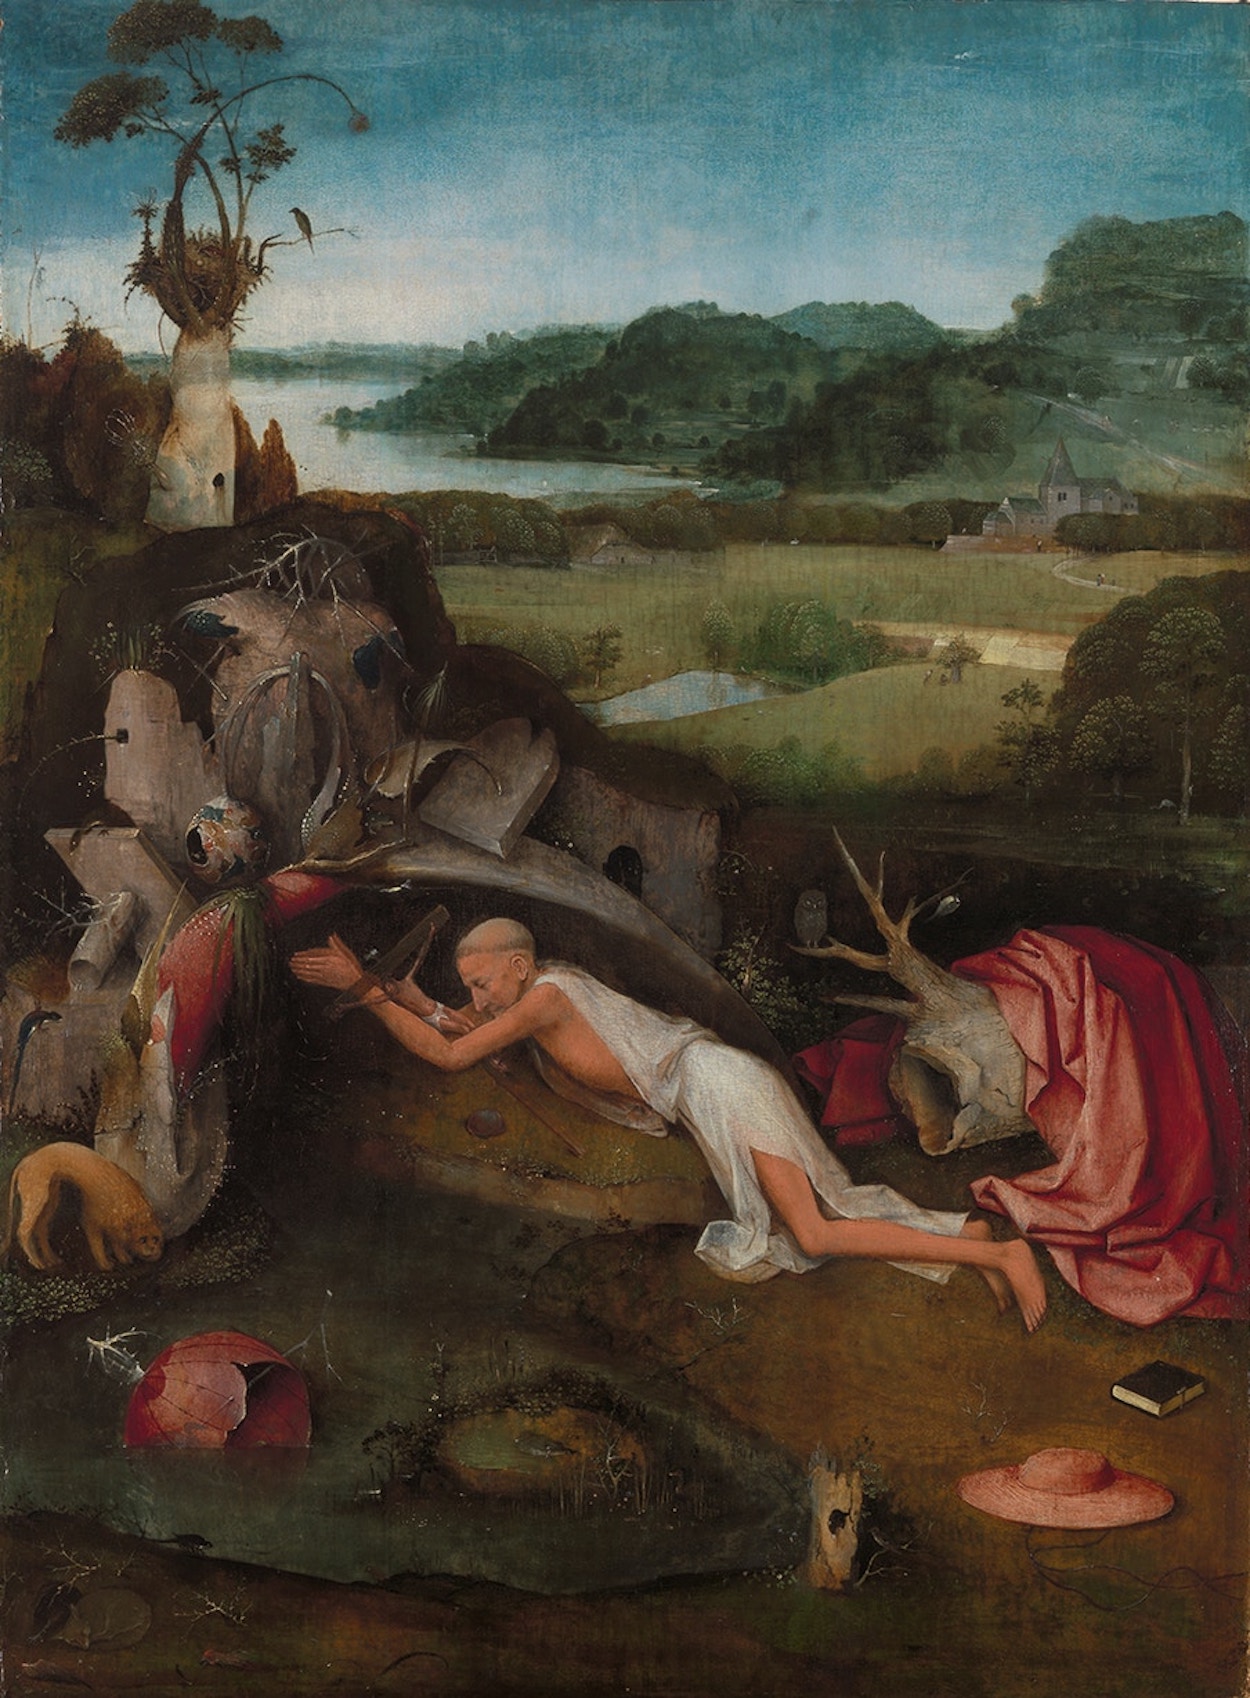 San Jerónimo by Hieronymus Bosch - ca. 1485 - 80,1 x 60,6 cm Museum voor Schone Kunsten Gent